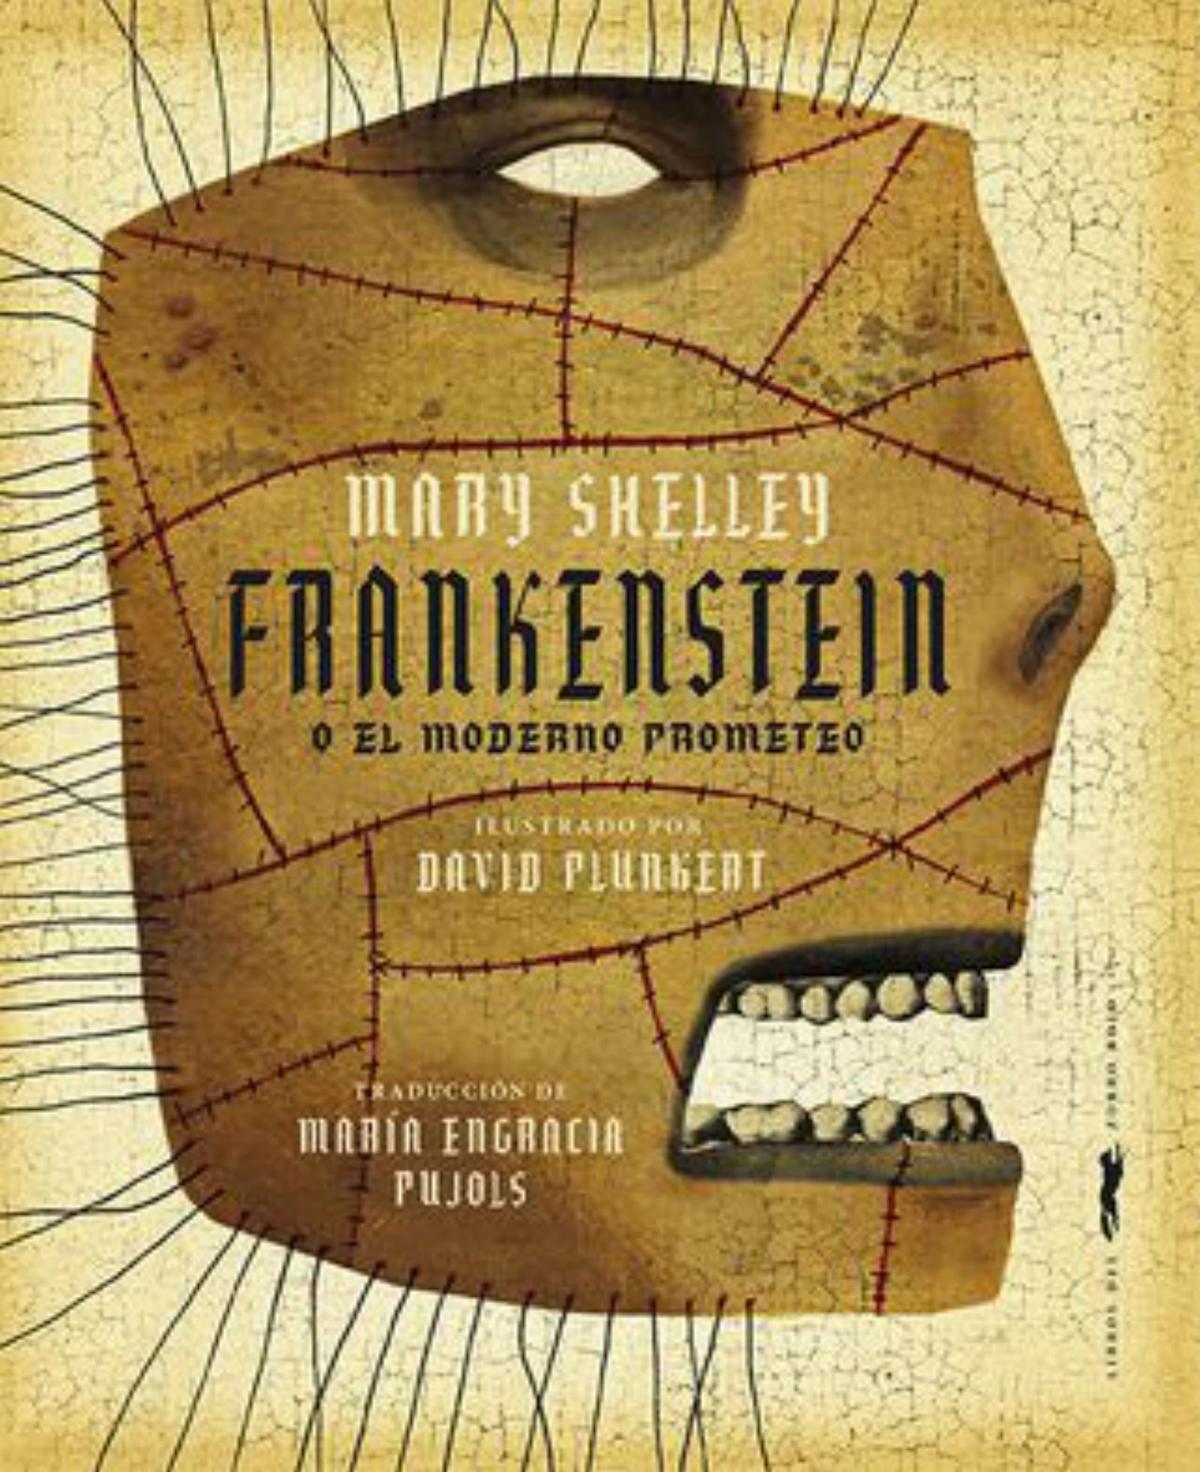 MARY W. SHELLEY. Frankenstein o el moderno Prometeo. Traducción de María E. Pujals. Ilustraciones de David Plunkert. Libros del Zorro Rojo, 248 páginas, 28,90 €.